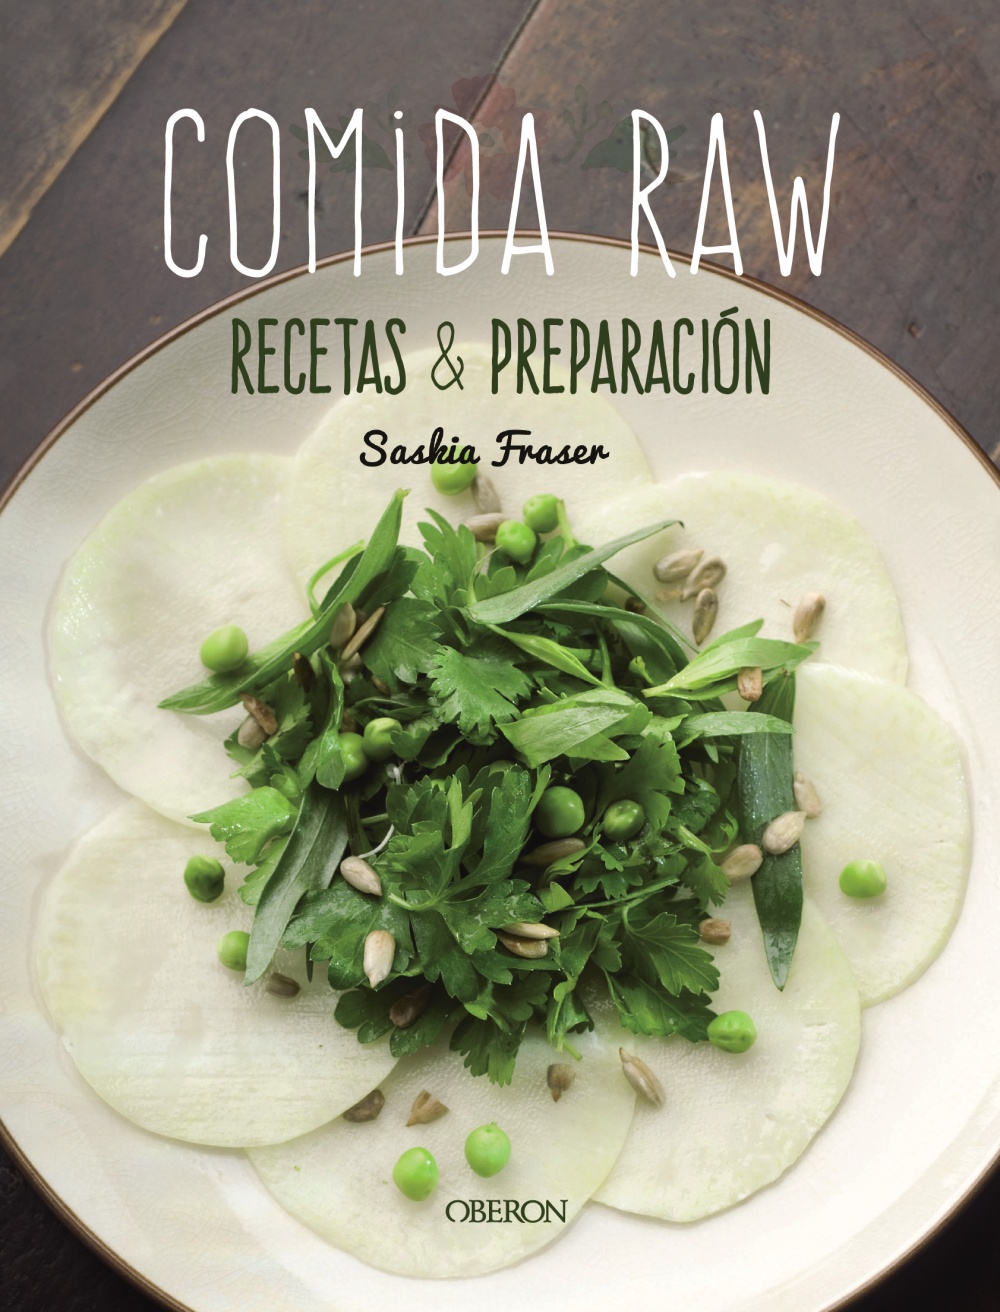 comida-raw-recetas-y-preparacion-978-84-415-4297-6.jpg